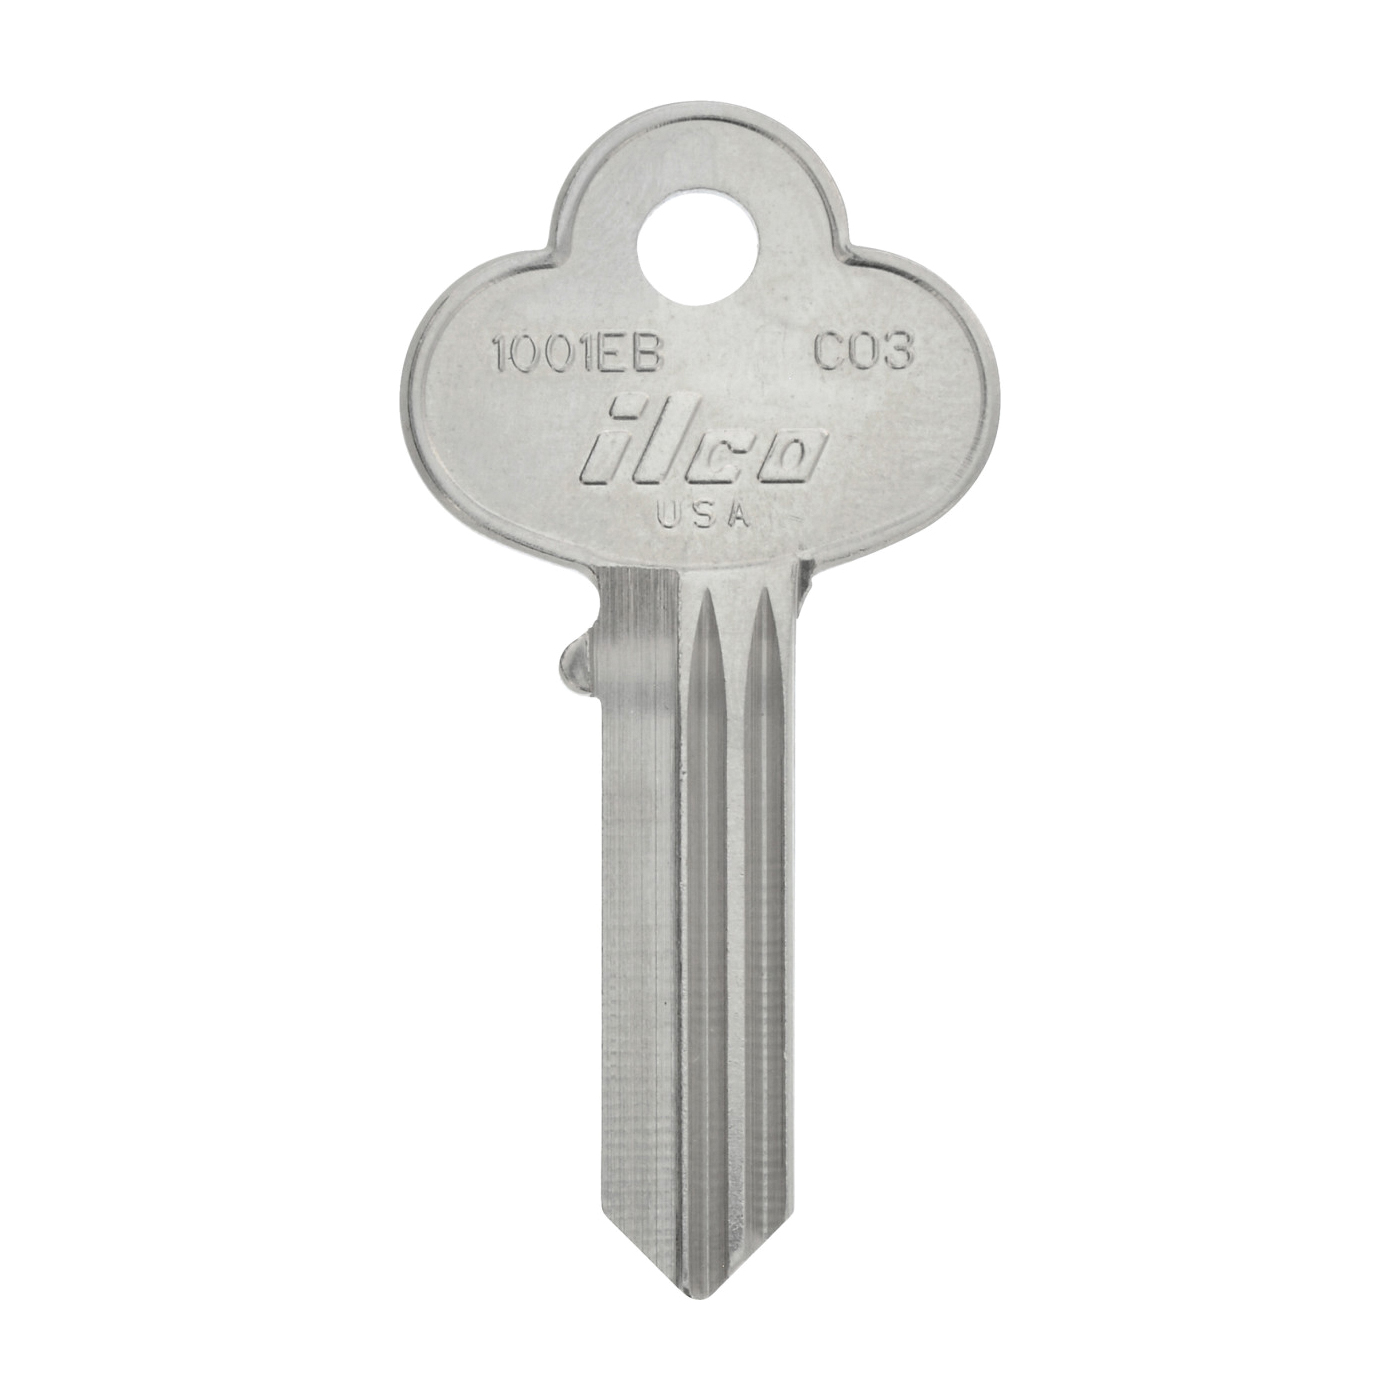 88602 Key Blank, Brass, For: Corbin Locks